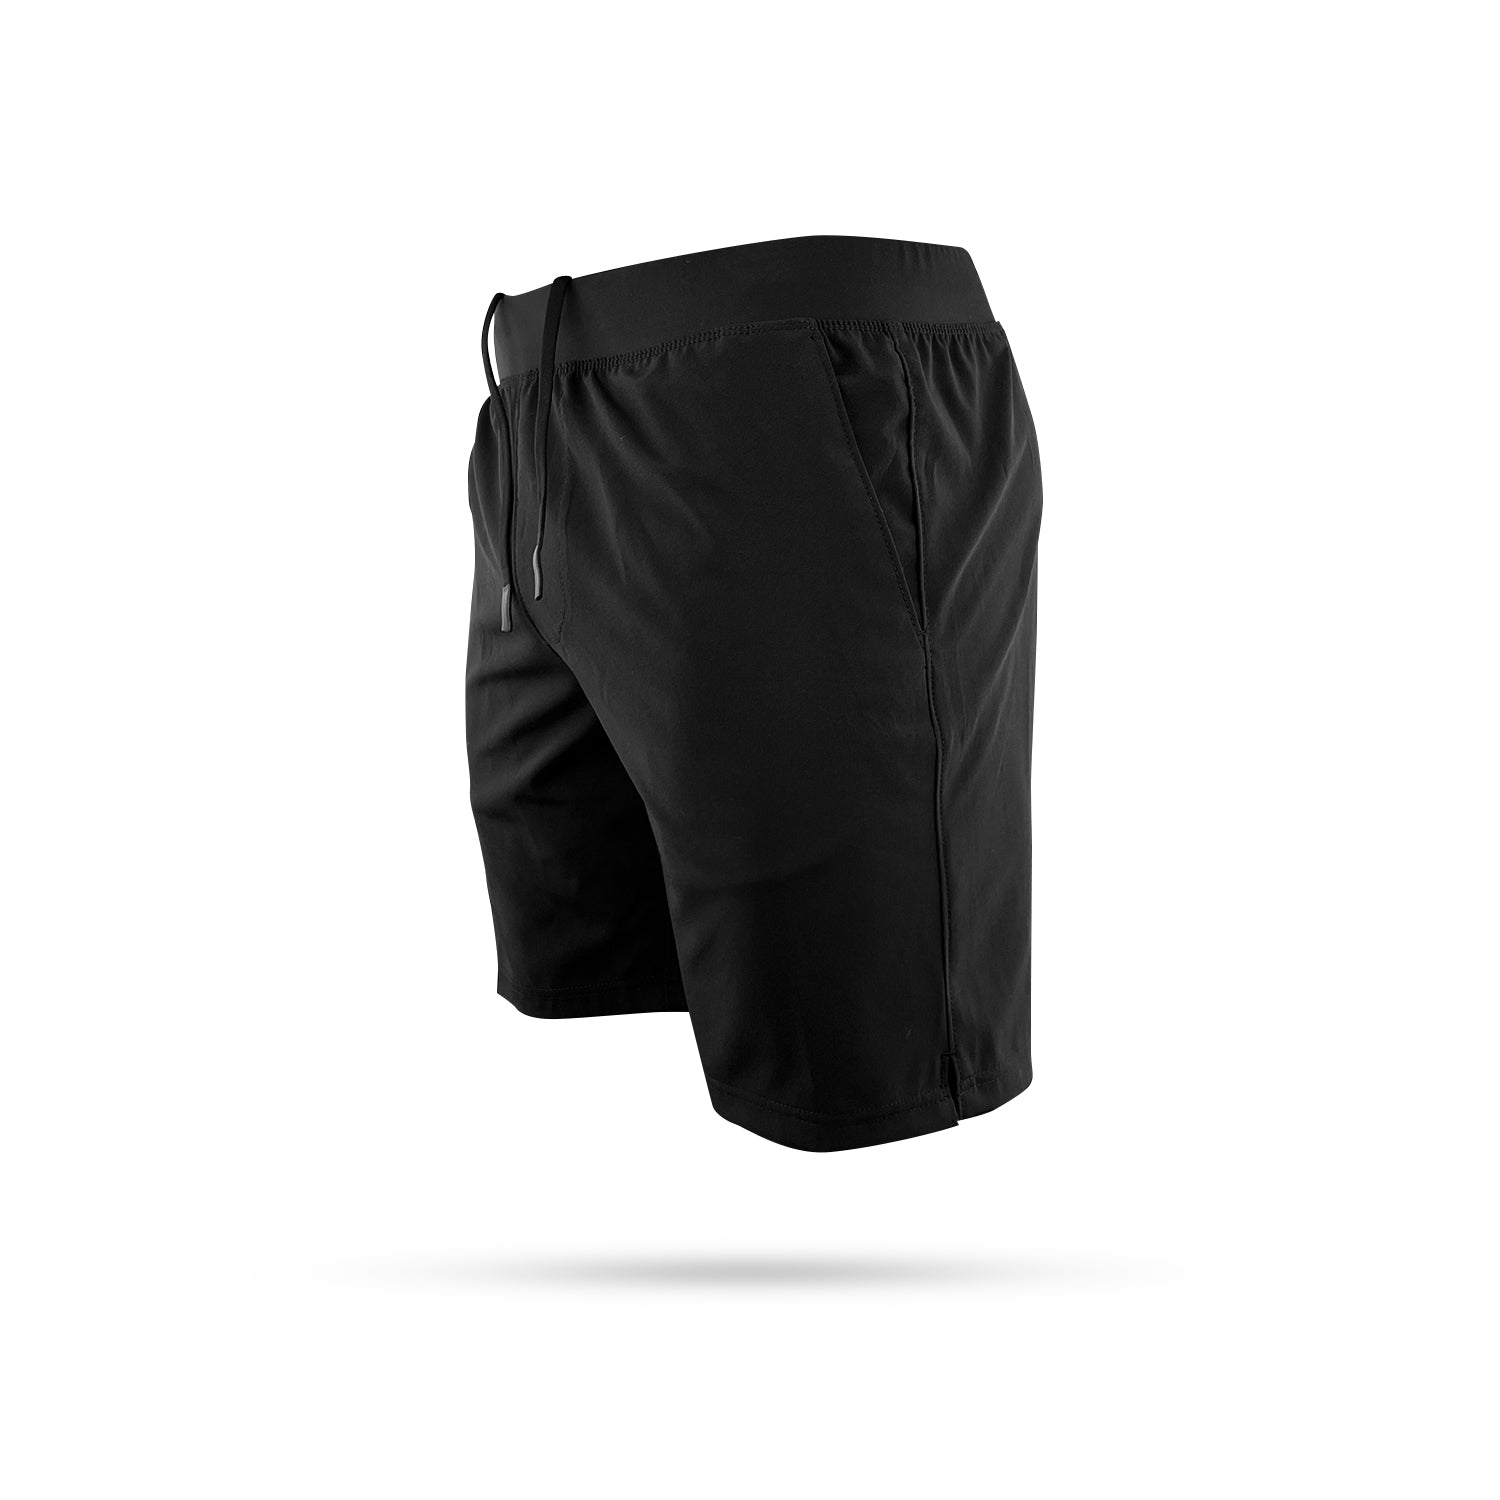 Nxtrnd Crew Lightweight 7” Shorts Black